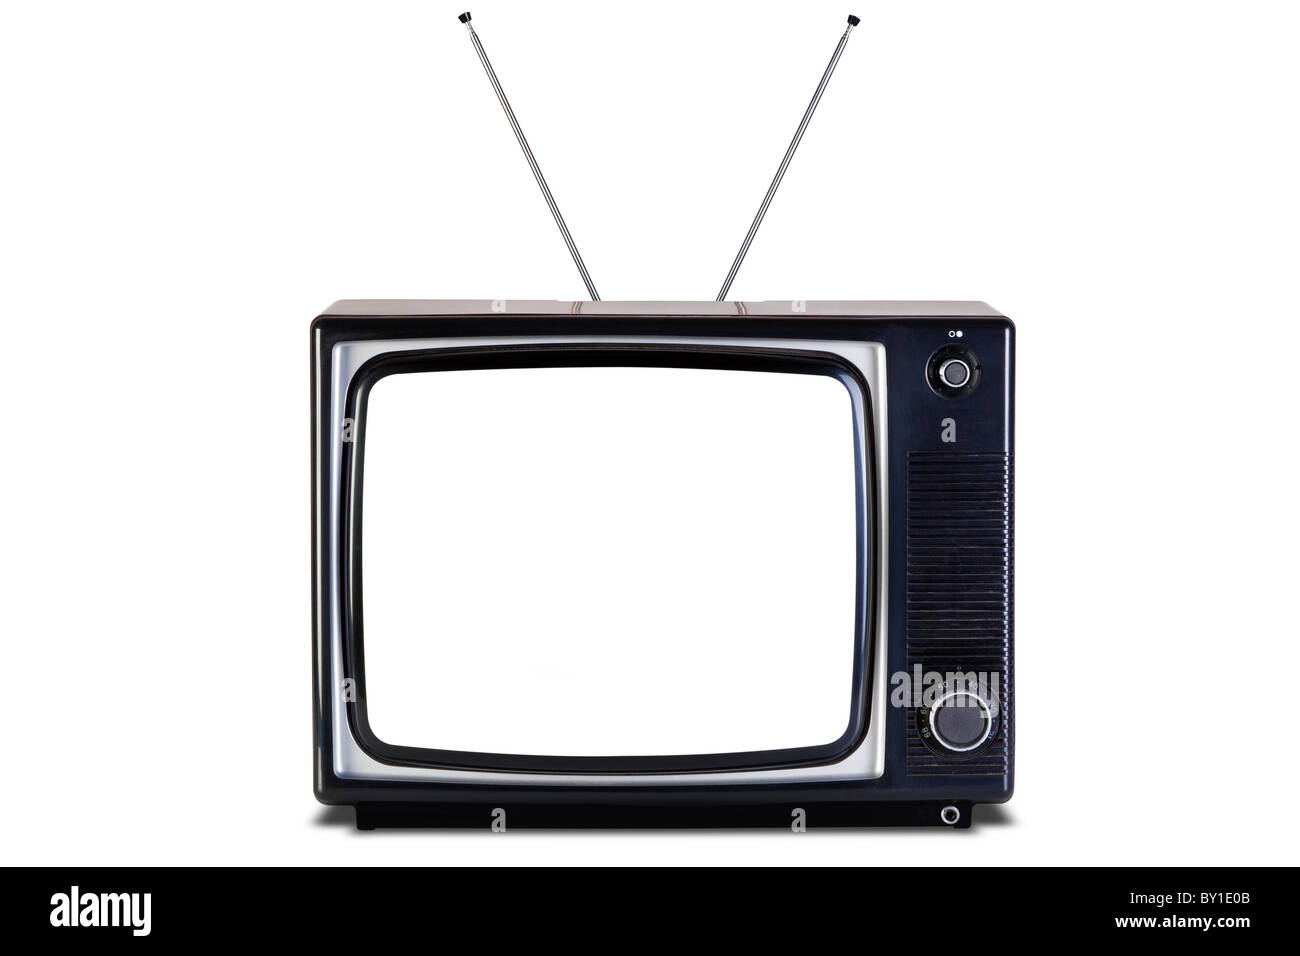 Ancien retro noir et blanc tv, écran blanc,isolé sur un fond blanc avec une légère ombre, avec des chemins de détourage pour télévision Banque D'Images